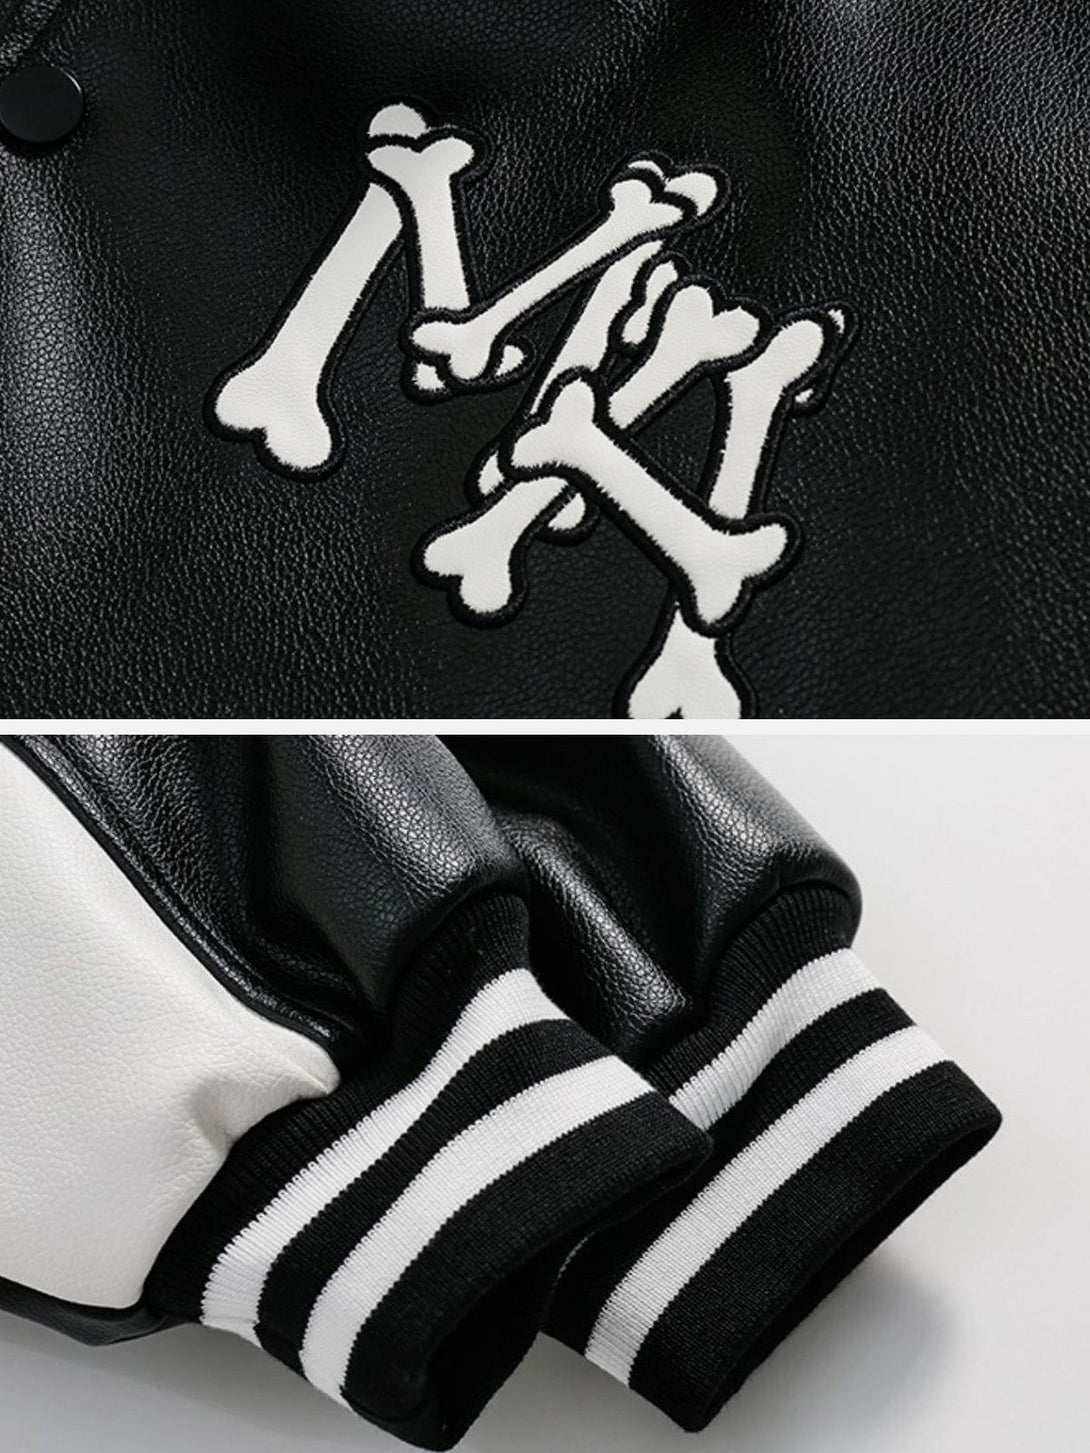 Majesda® - Skeleton Letters PU Jacket outfit ideas, streetwear fashion - majesda.com